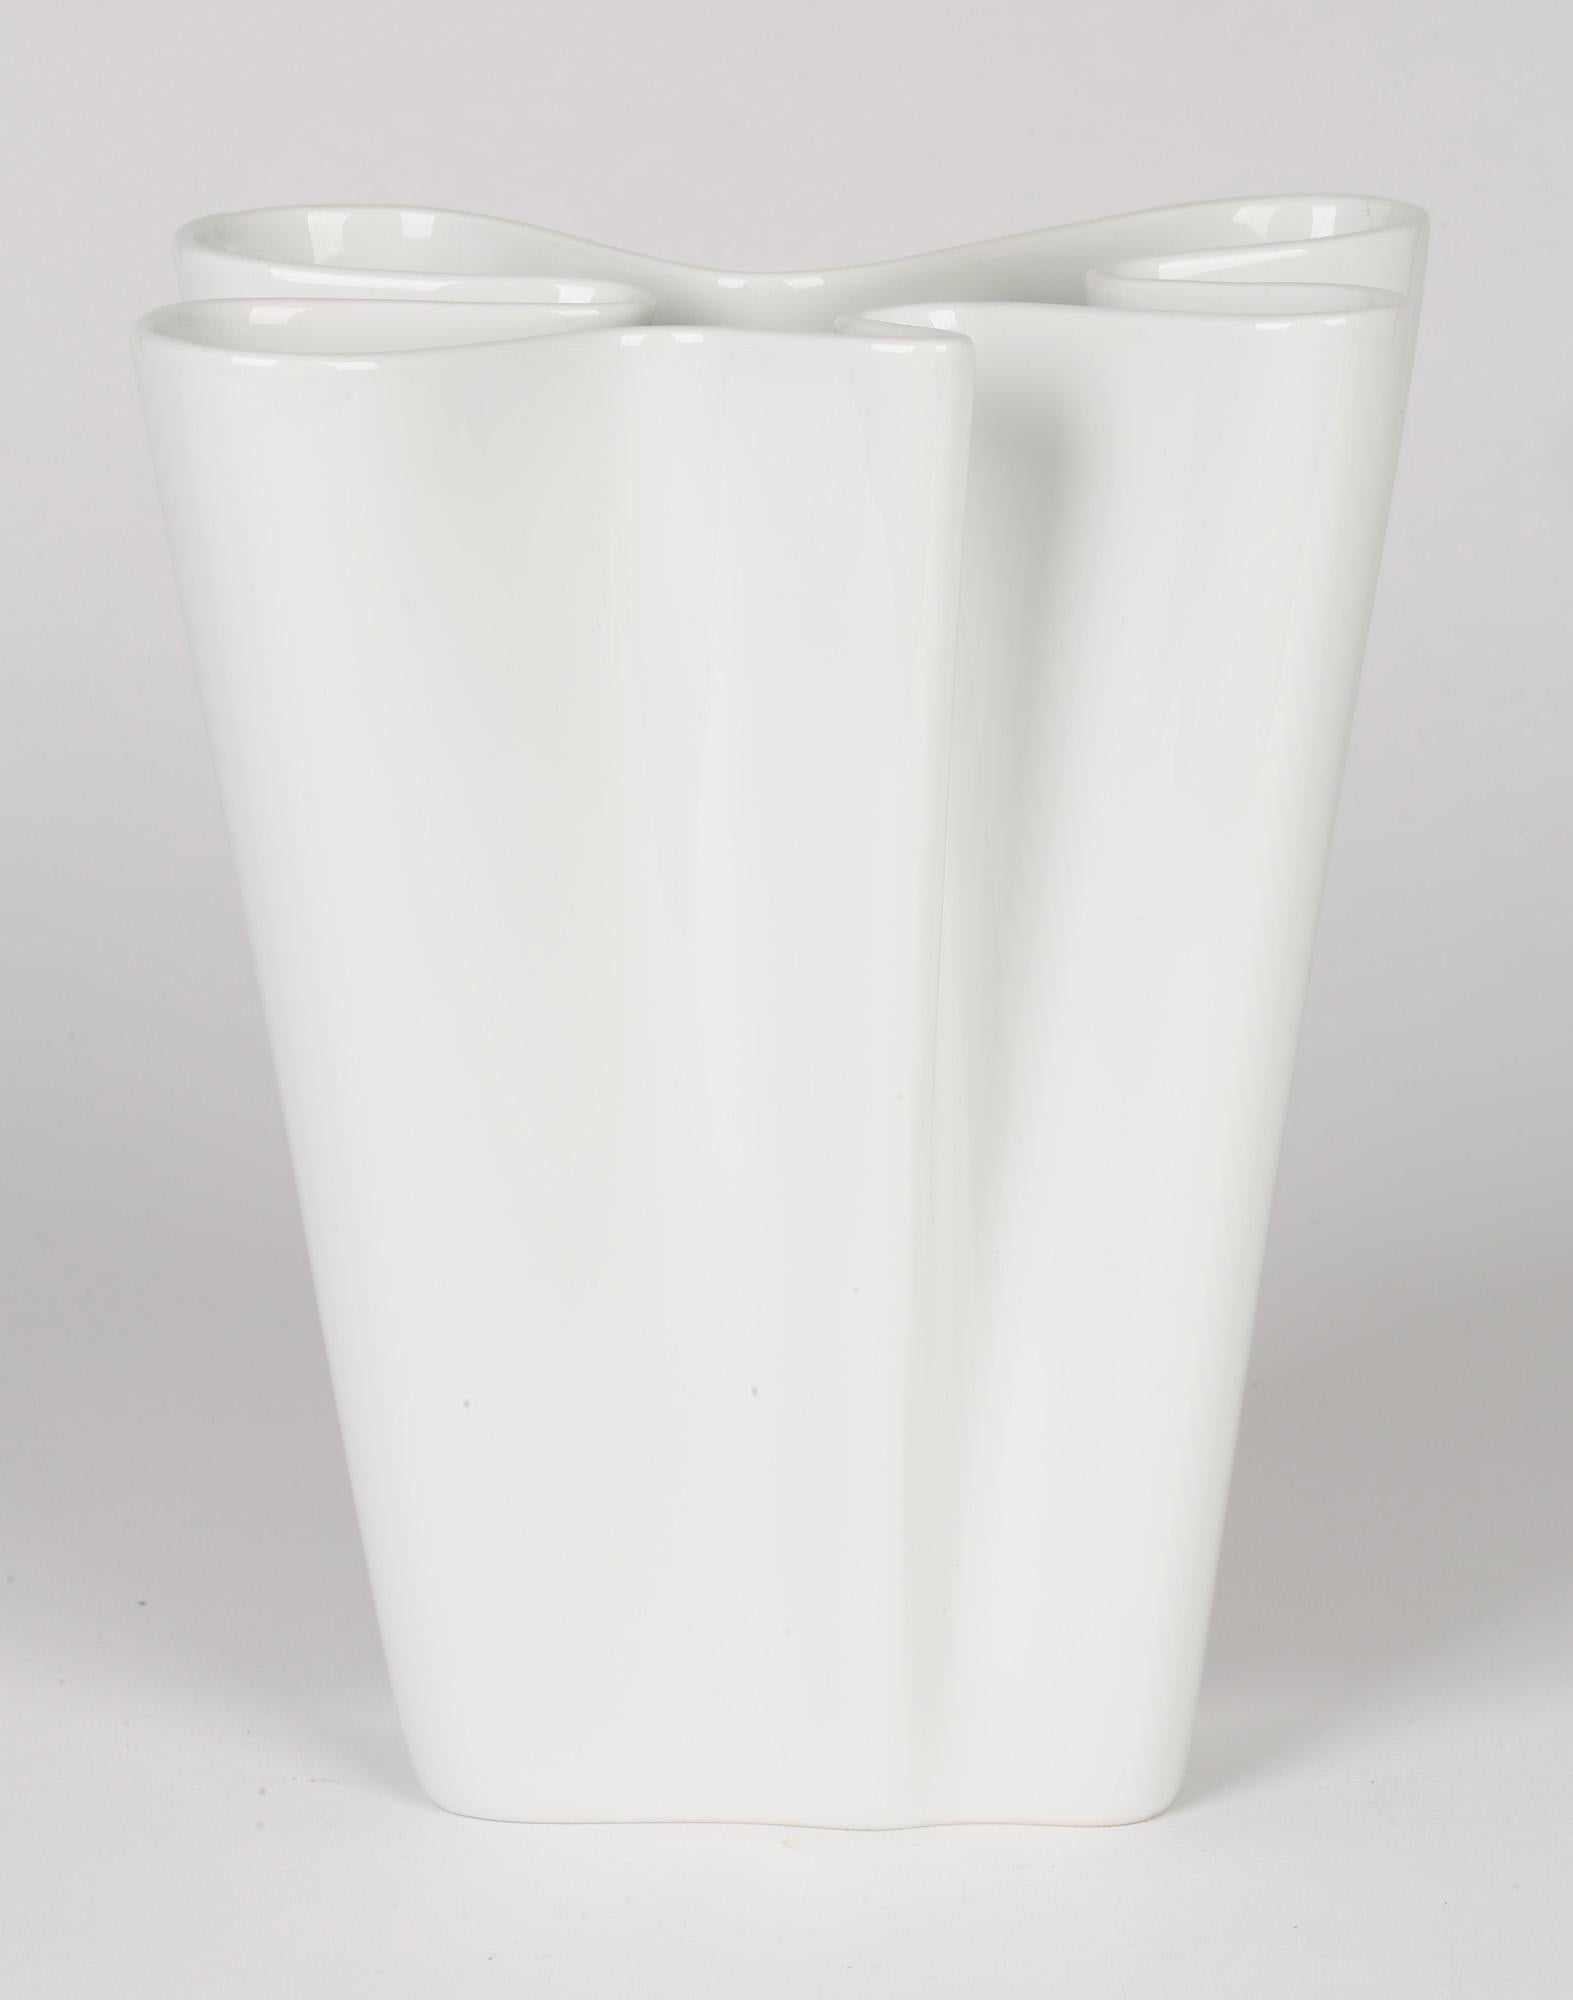 Rosenthal German Studio-Line Porcelain White Flux Vase 2